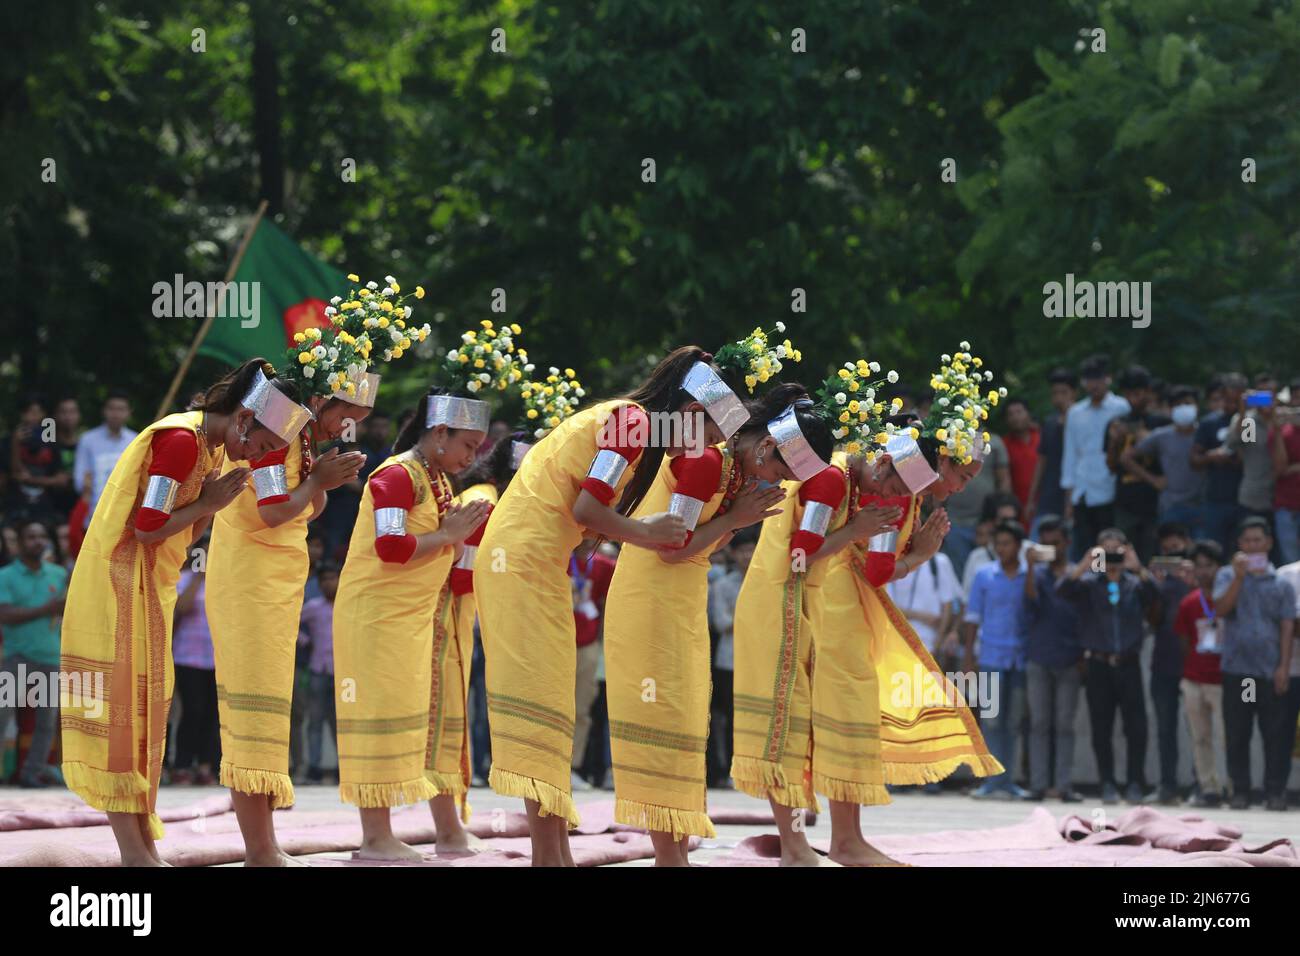 Dhaka, Bangladesh, 9 agosto 2022. Gli artisti indigeni del Bangladesh suonano musica danzando per celebrare la Giornata Mondiale degli indigeni al Minar Shaheed centrale a Dhaka, Bangladesh, il 9 agosto 2022. Foto di Suvra Kanti Das/ABACAPRESS.COM Foto Stock